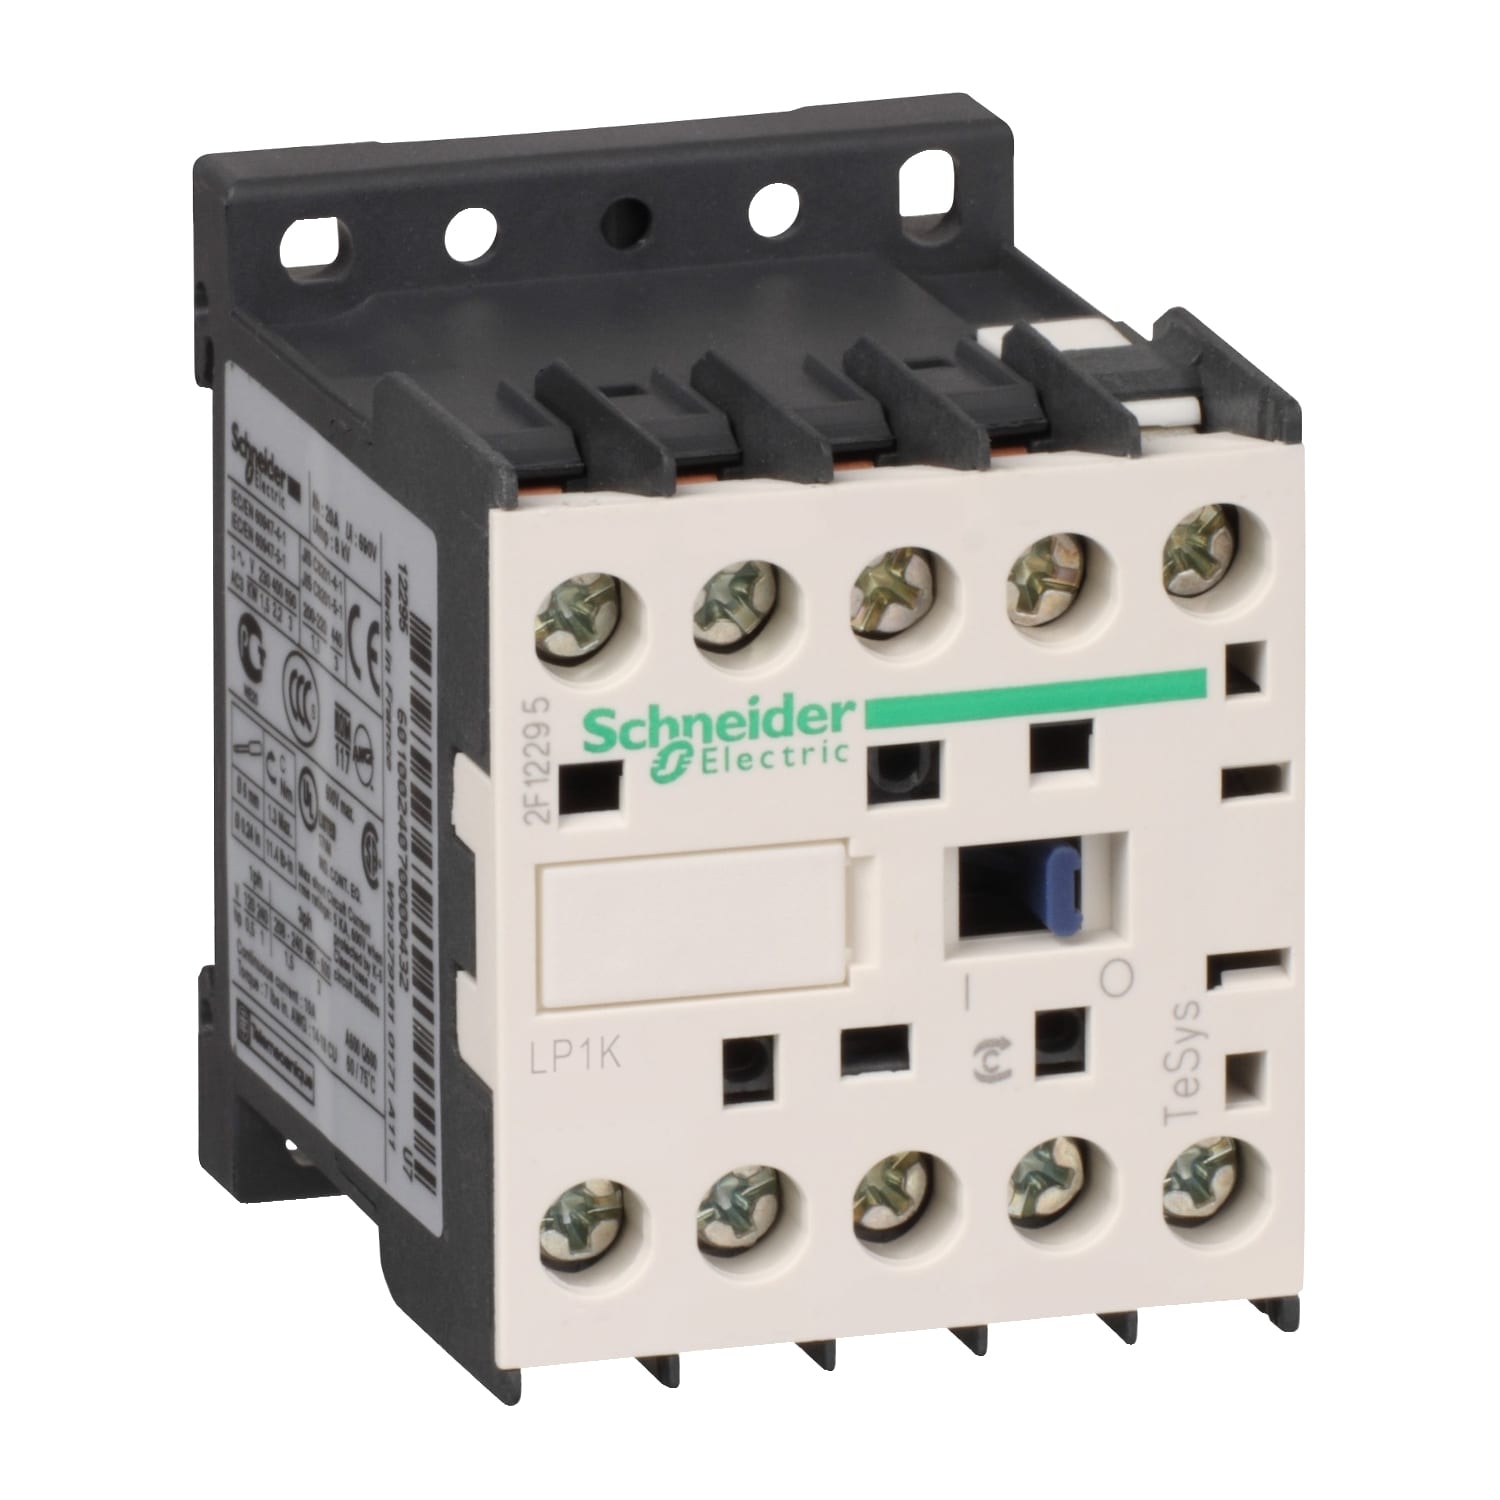 Schneider Electric - TeSys LP1K - contacteur - 3P - AC-3 440V - 6A - bobine 220Vcc